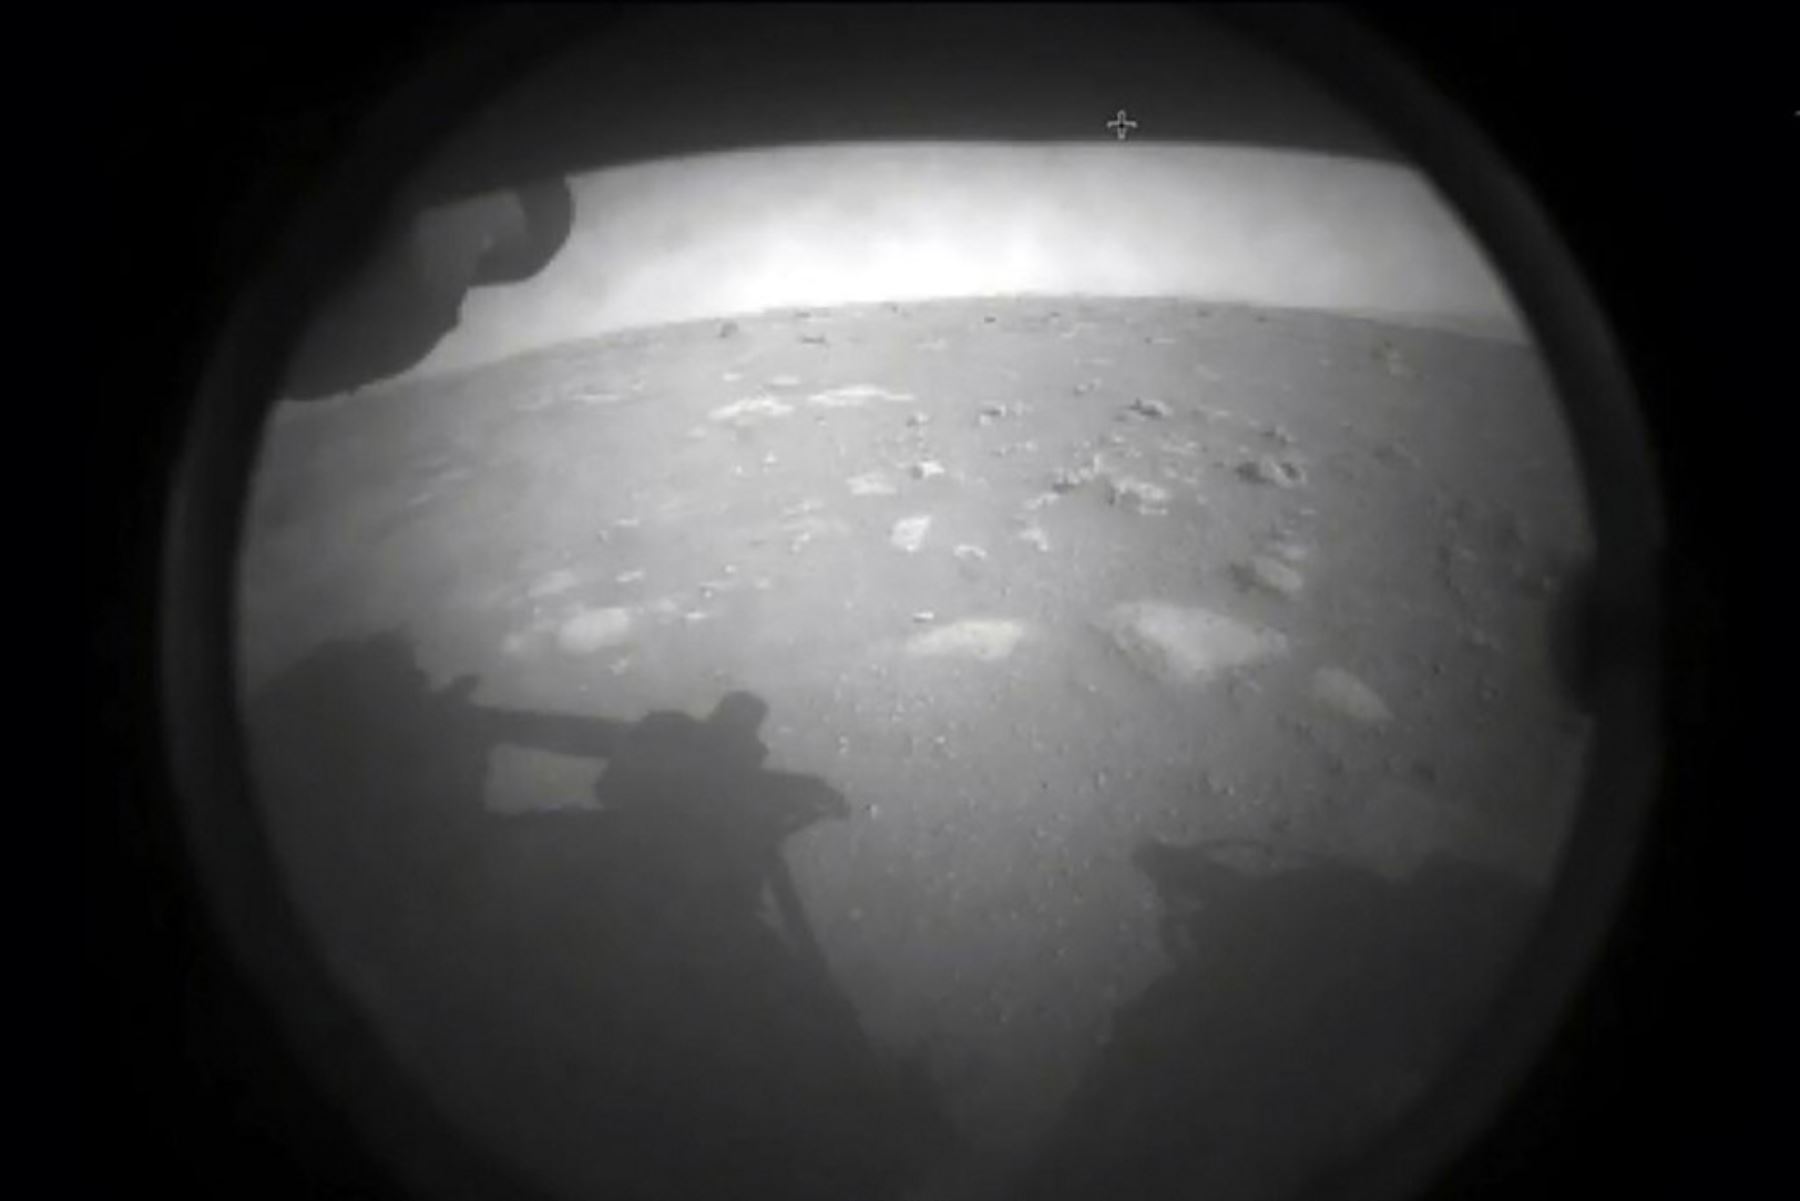 Primera imagen de Marte tomada por el rover Perseverance tras aterrizar en la superficie de Marte el 18 de febrero de 2021. La NASA confirmó la hazaña después de superar con éxito una fase de aterrizaje peligrosa conocida como los "siete minutos de terror". "Aterrizaje confirmado", dijo el líder de operaciones Swati Mohan alrededor de las 3:55 pm hora del este (2055 GMT). Foto: Handout / NASA / AFP